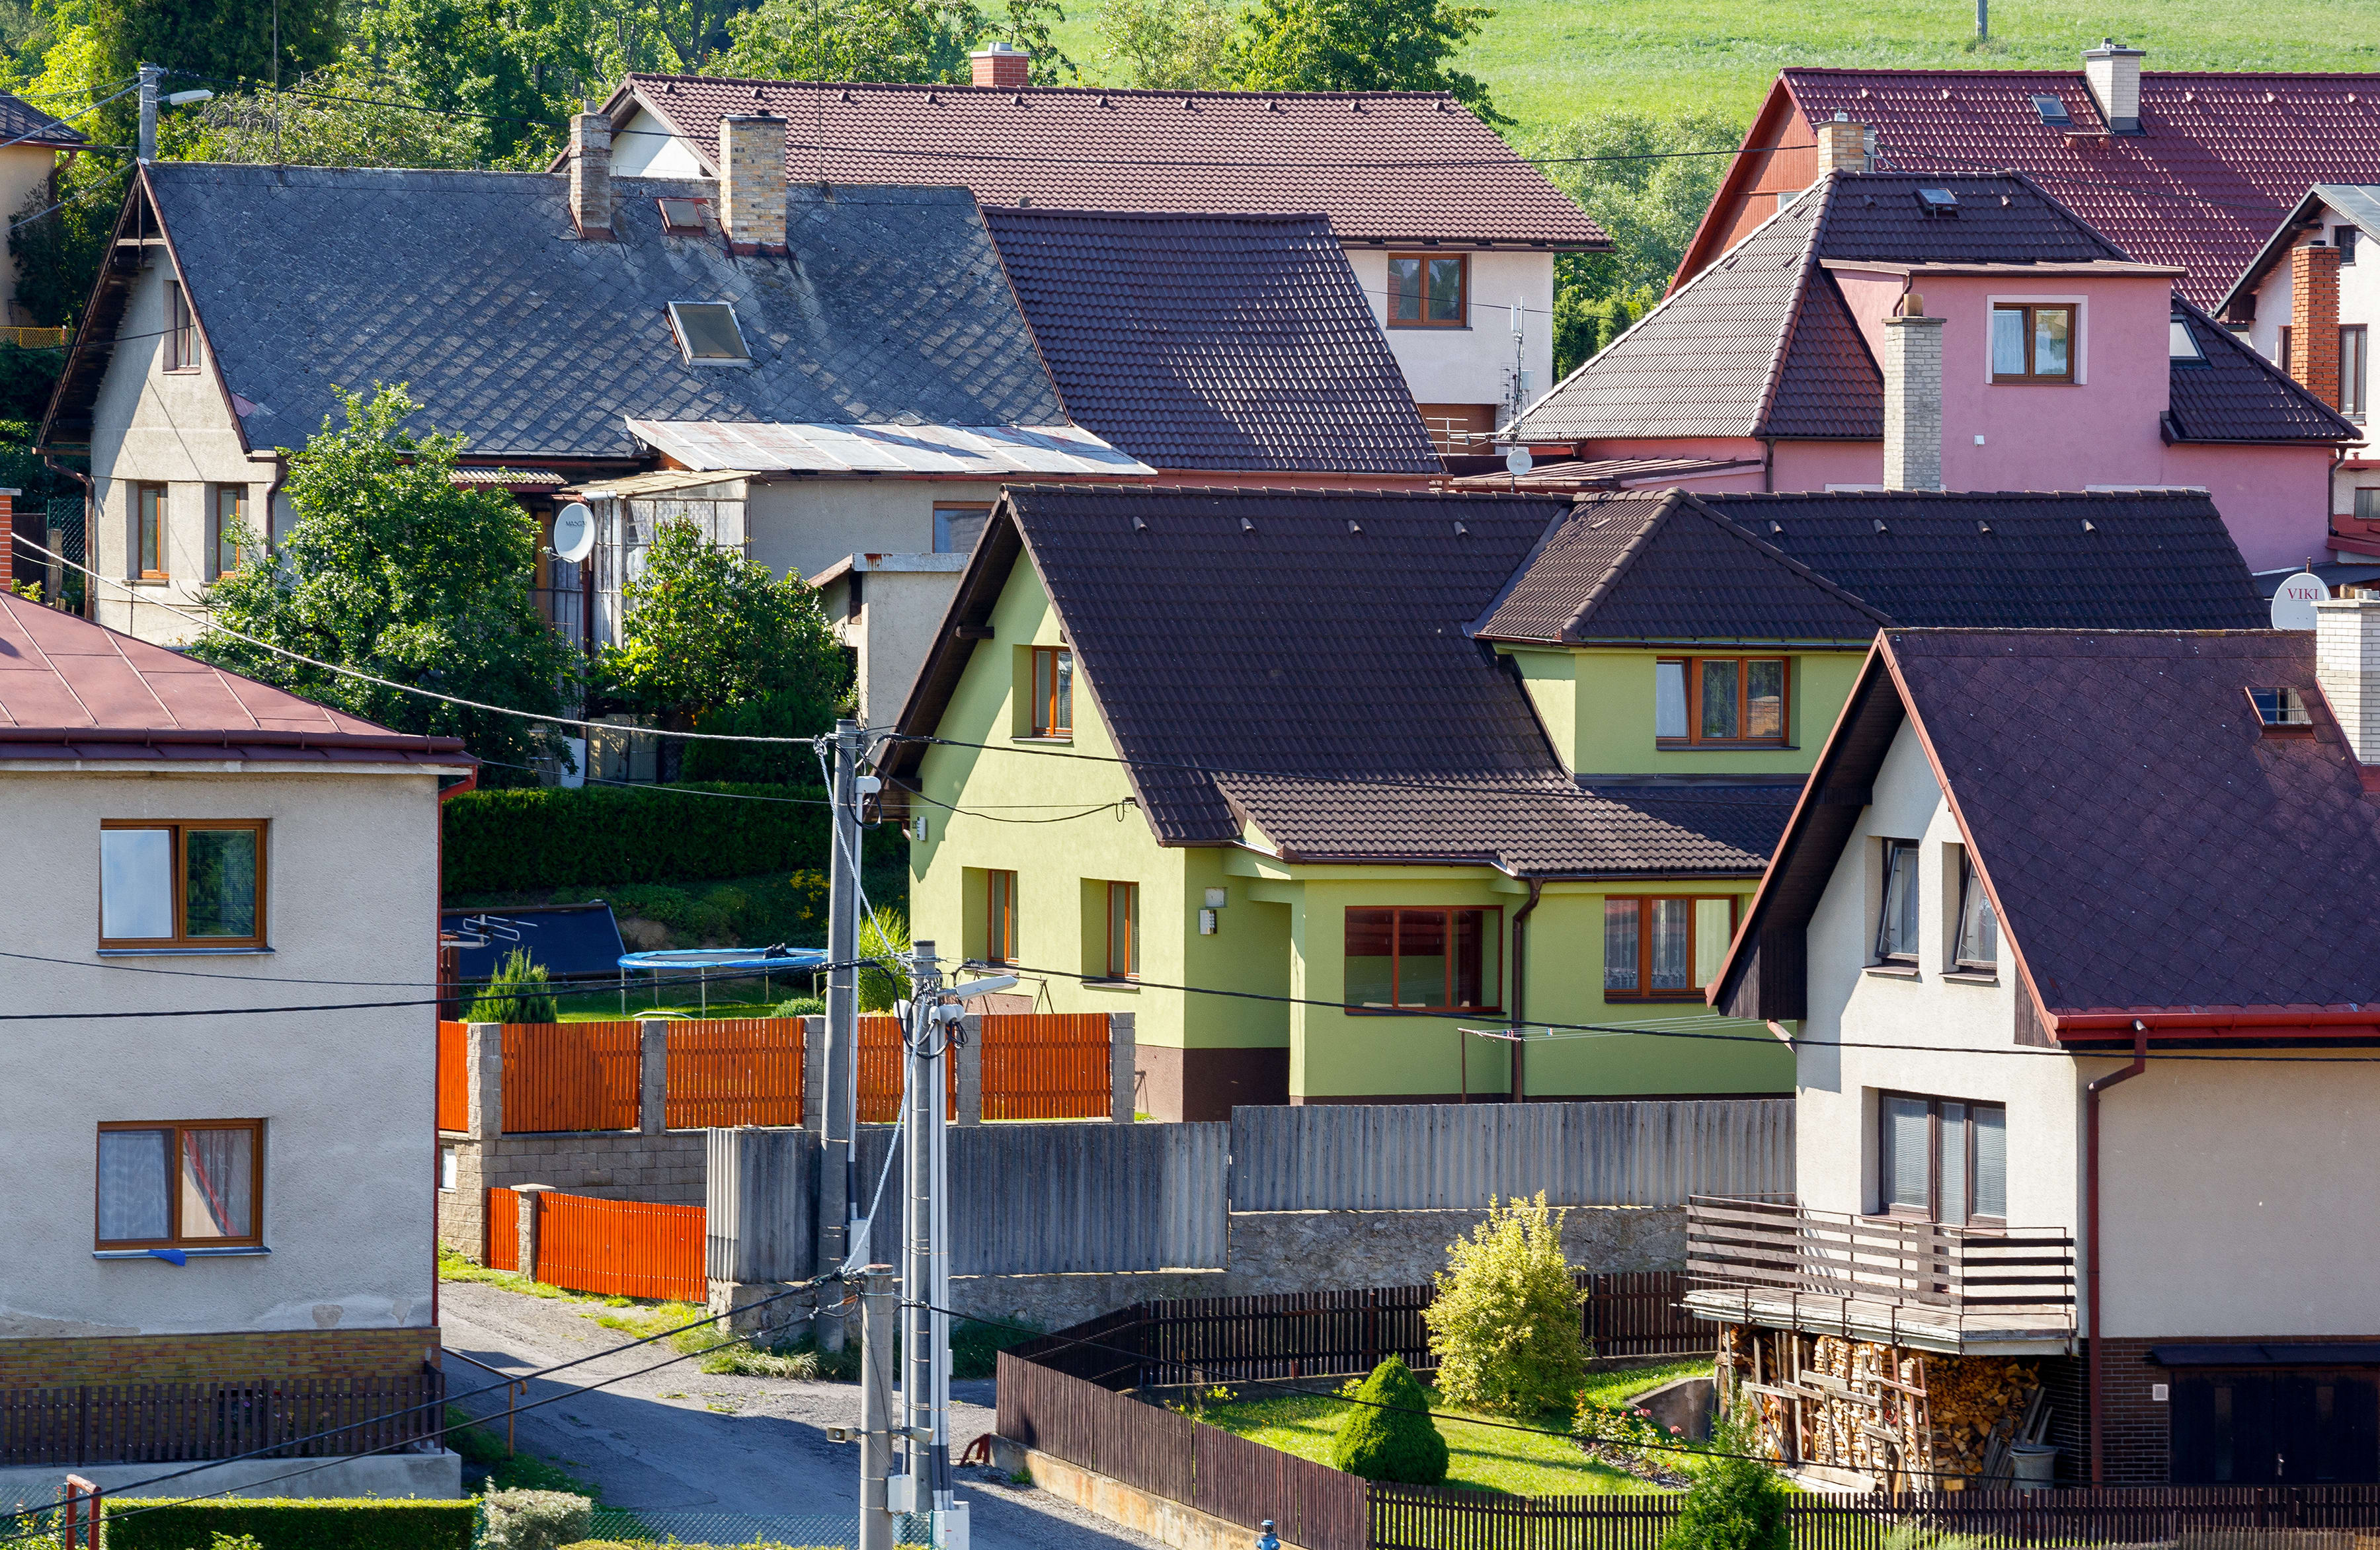 Wohngegend mit alten, unsanierten Einfamilienhäusern in Deutschland